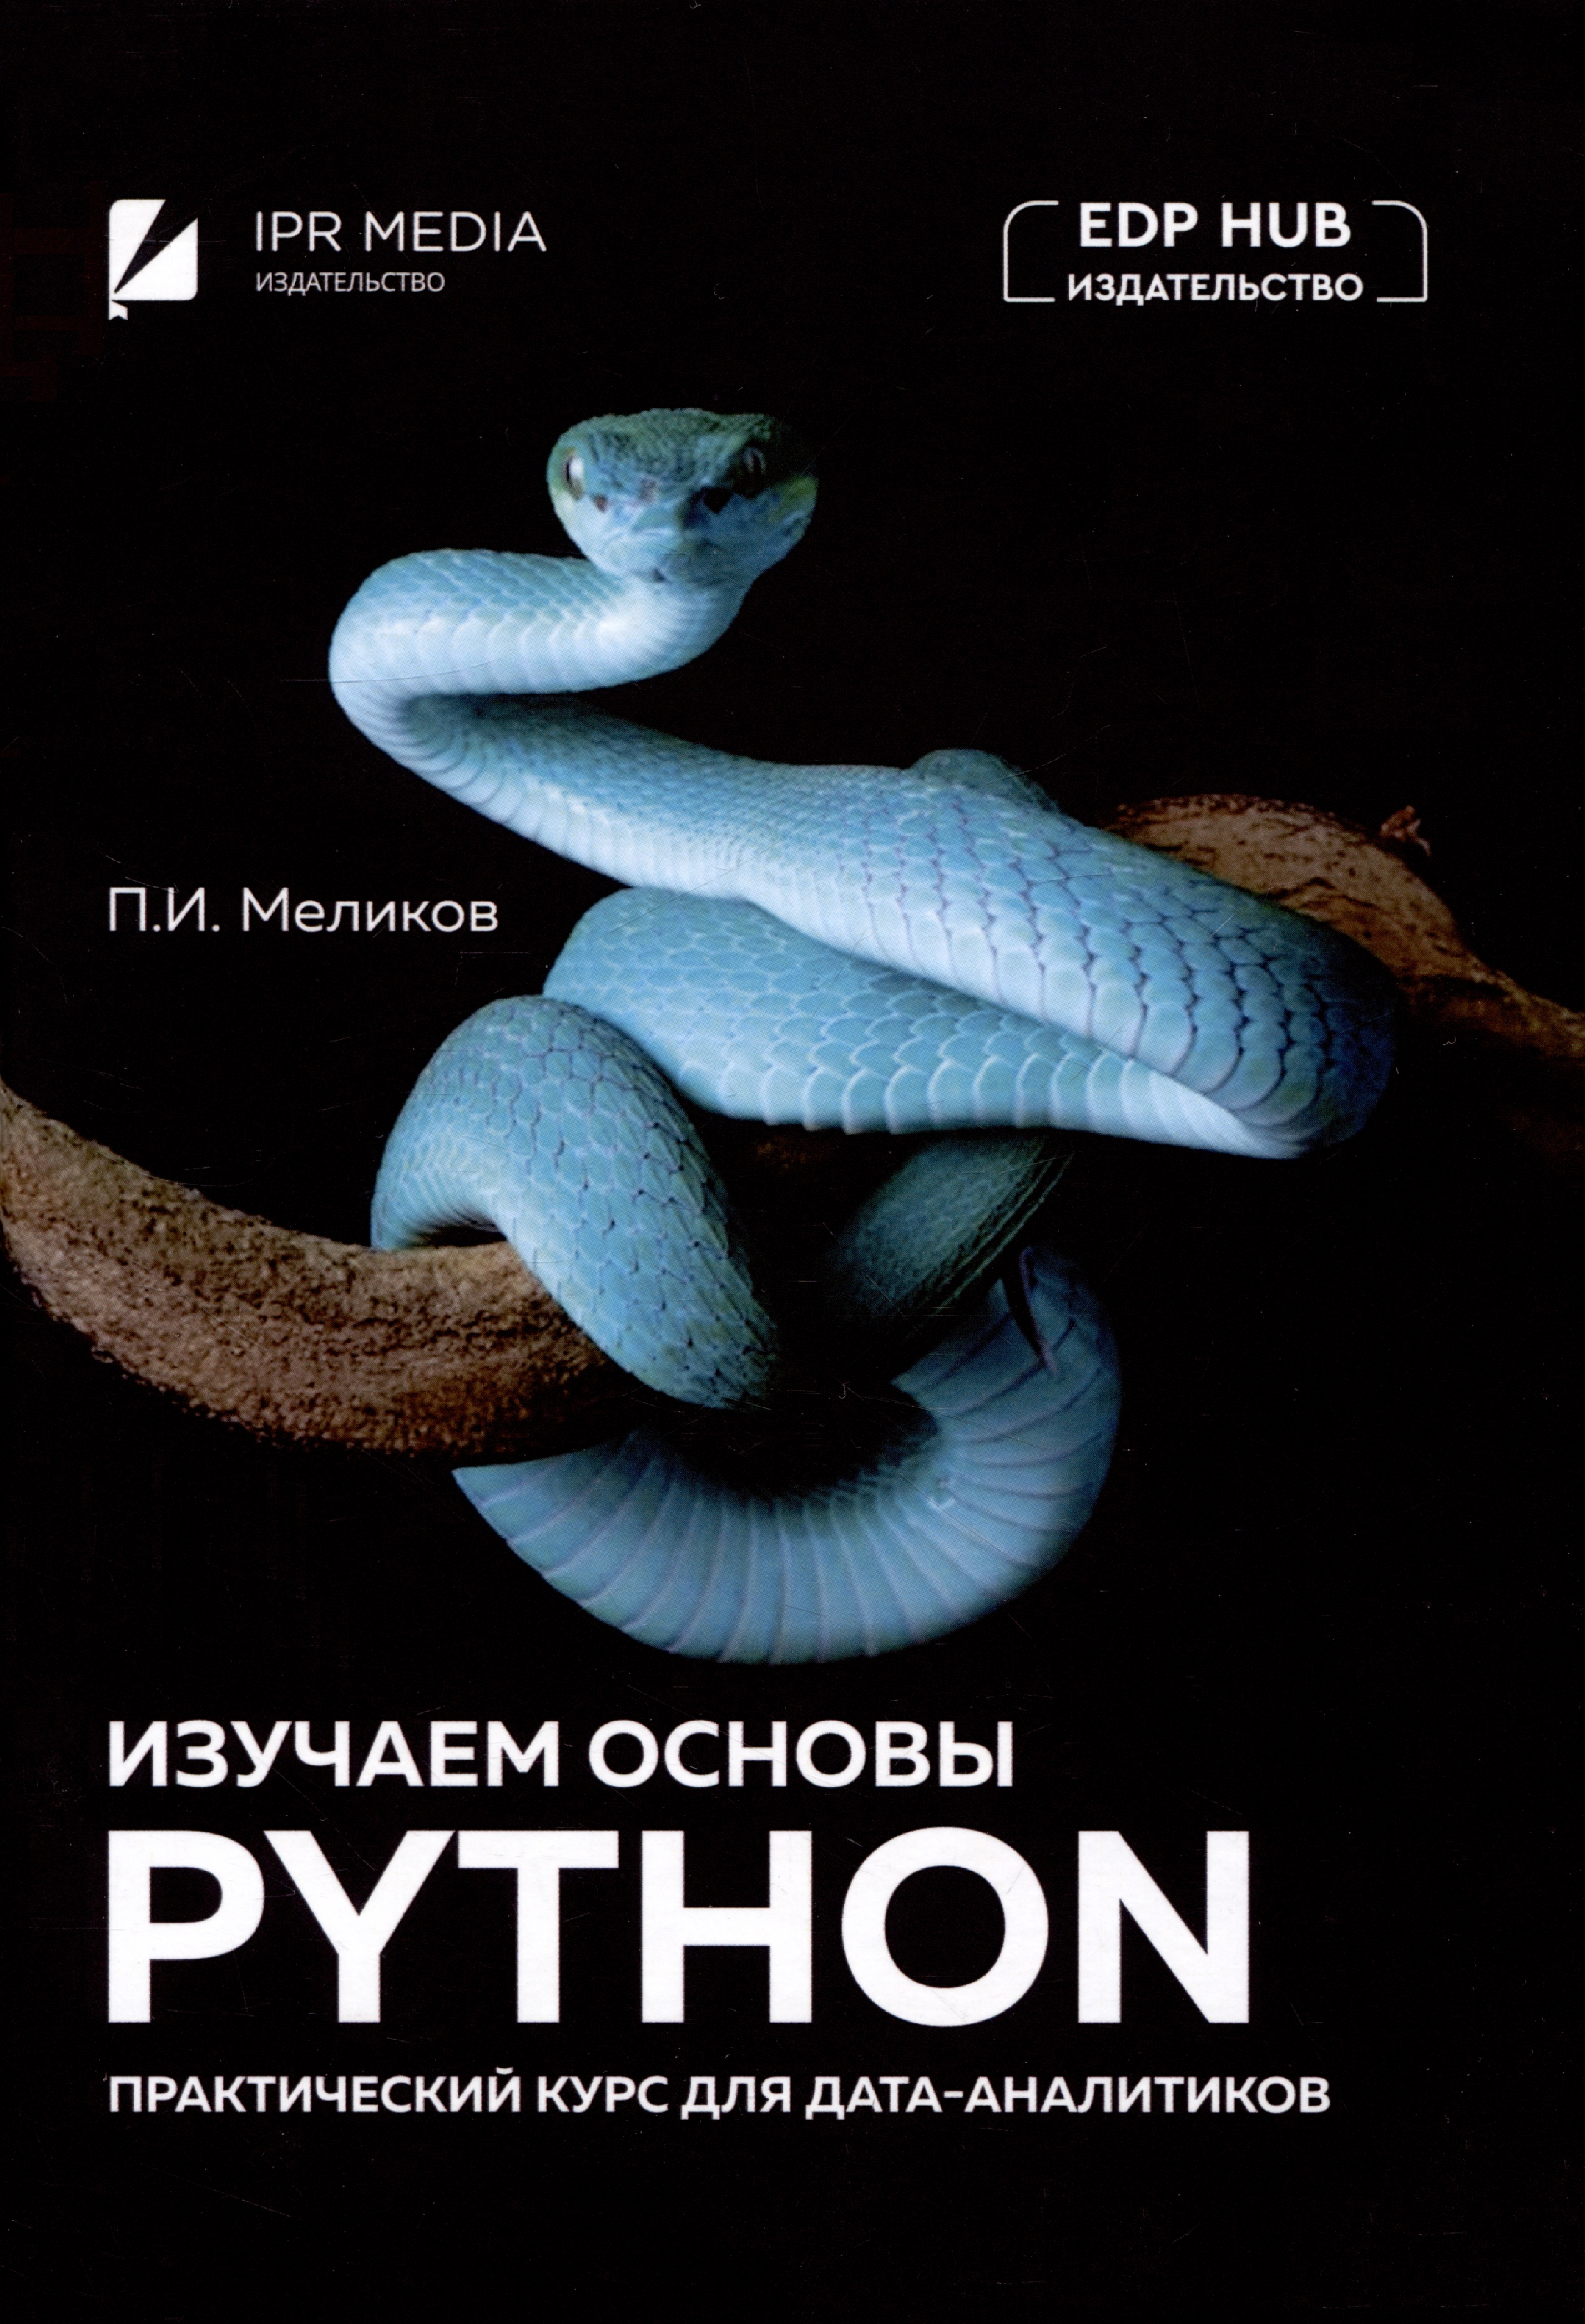 меликов павел ильич изучаем основы python практический курс для дата аналитиков Меликов Павел Ильич Изучаем основы Python. Практический курс для дата-аналитиков